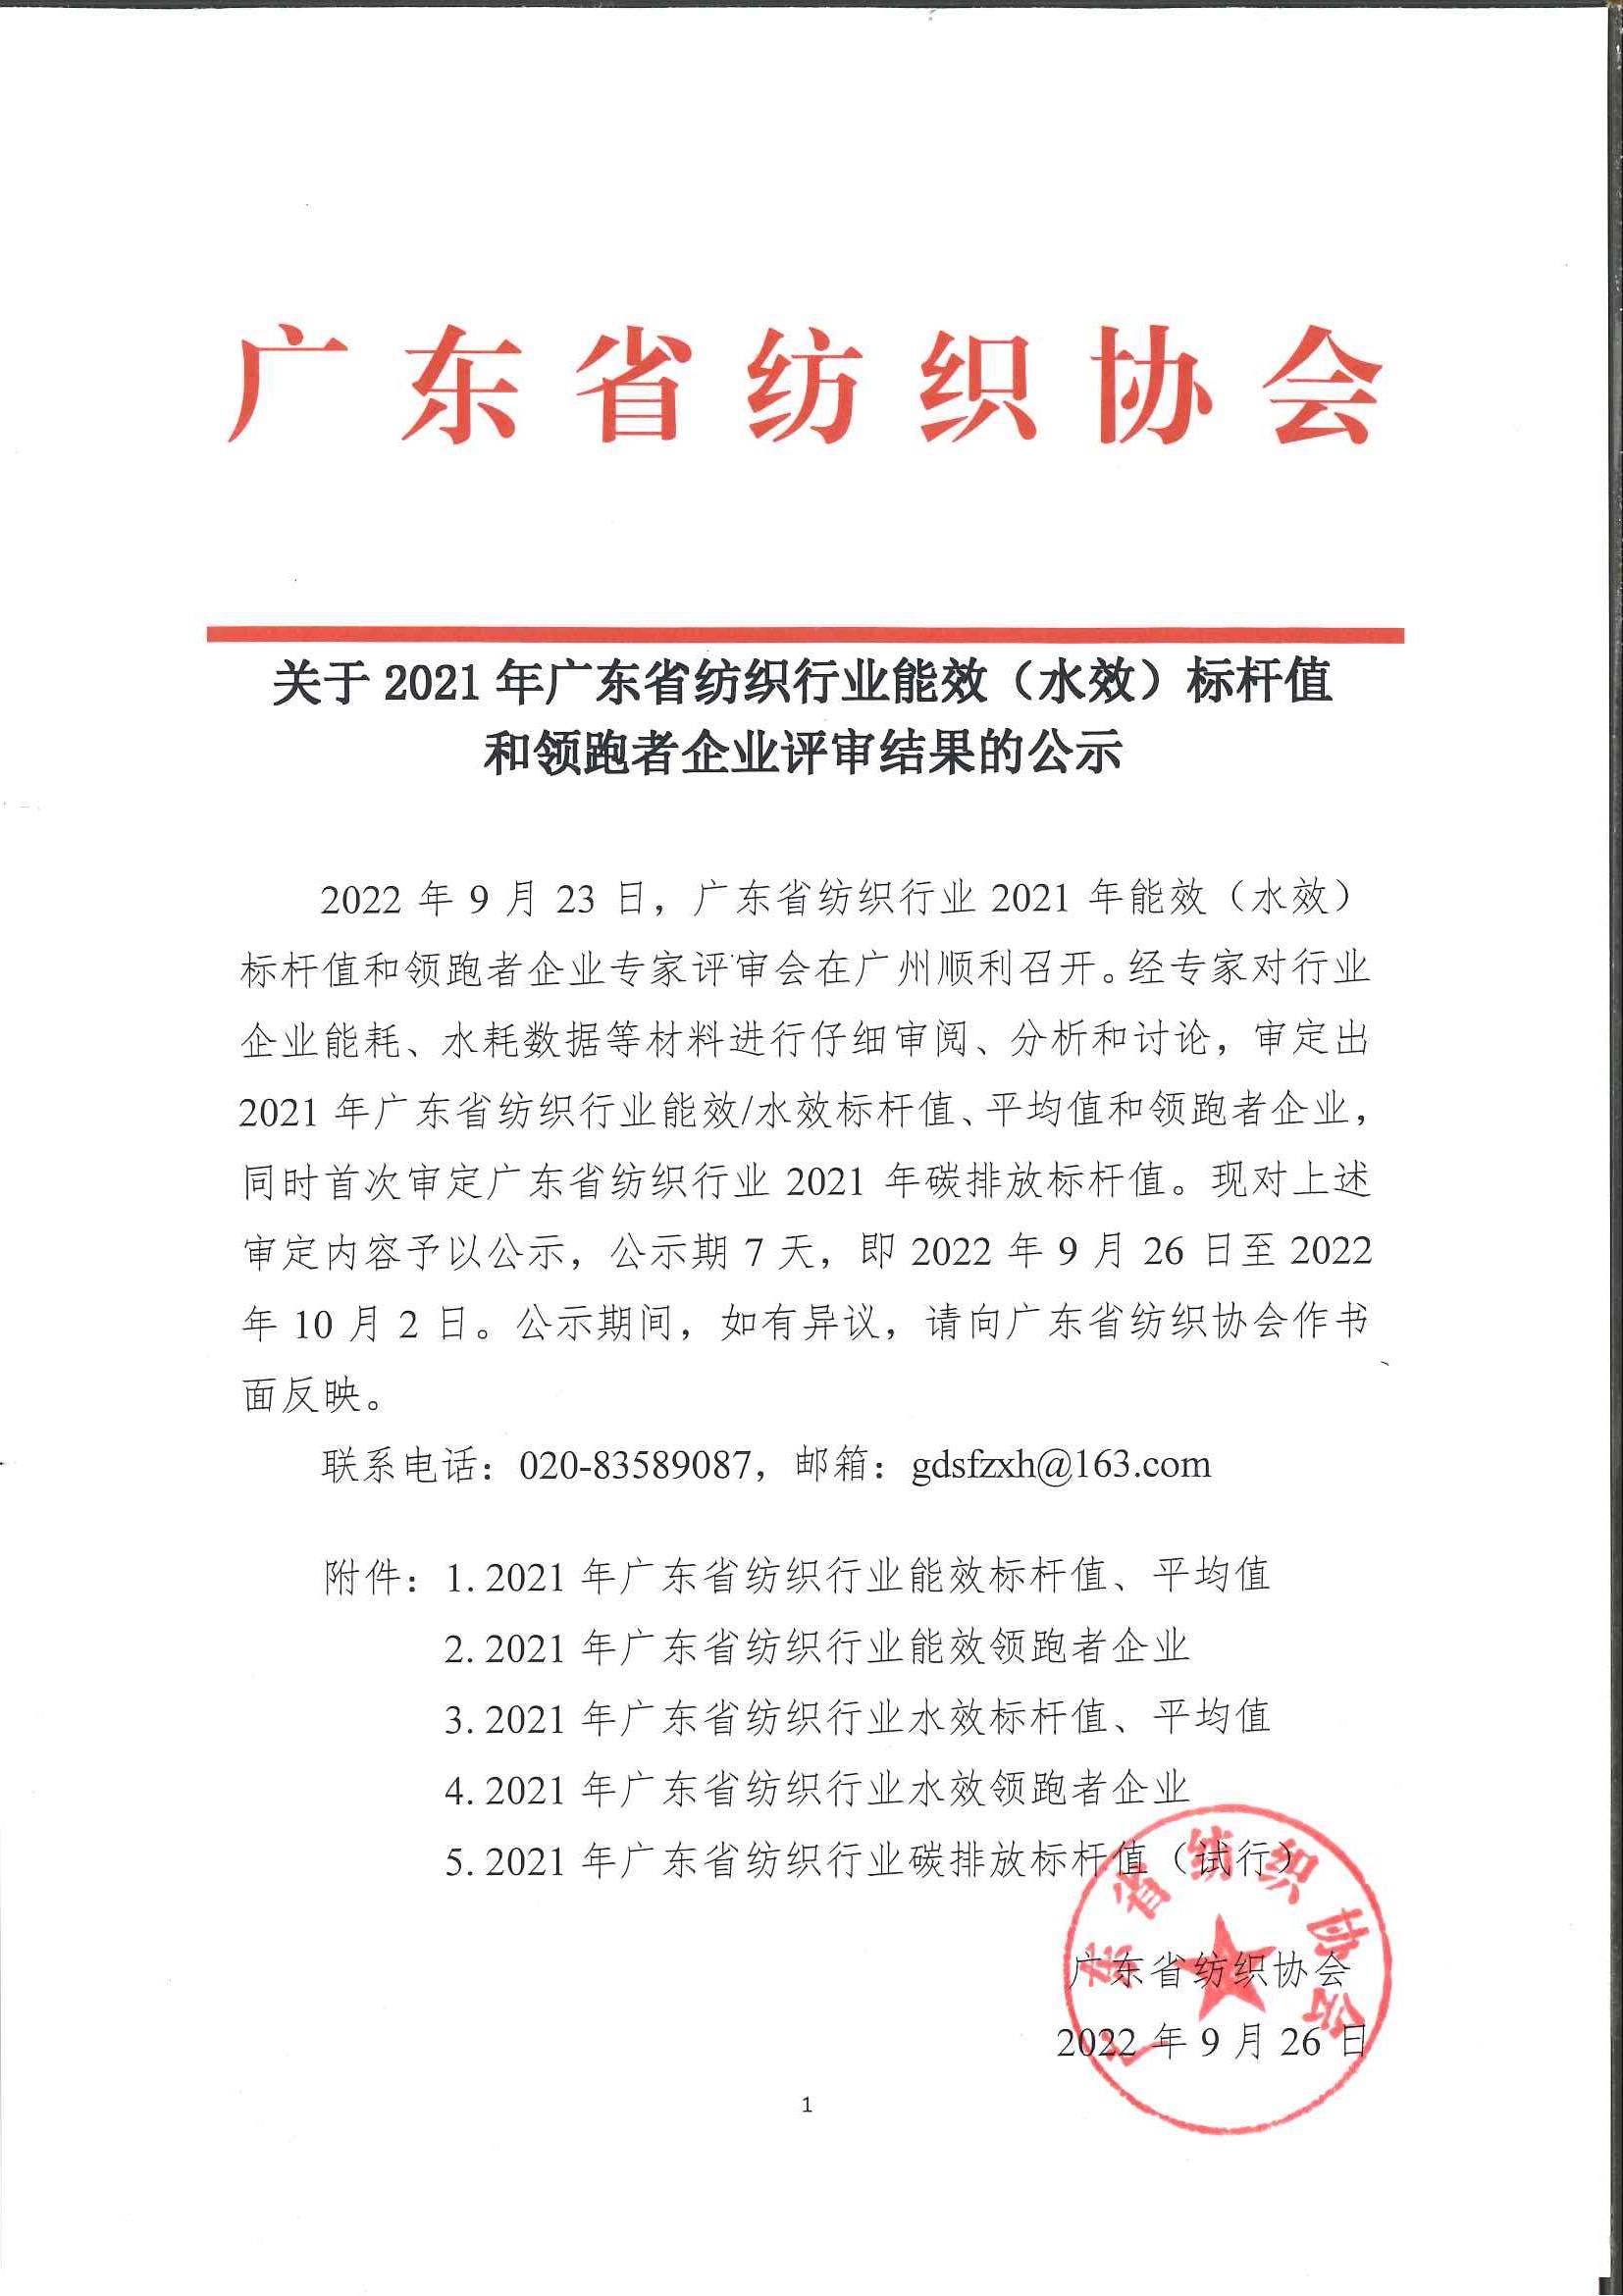 关于2021年广东省纺织行业能效（水效）标杆值和领跑者企业评审结果的公示（2022.9.26）_页面_1.jpg